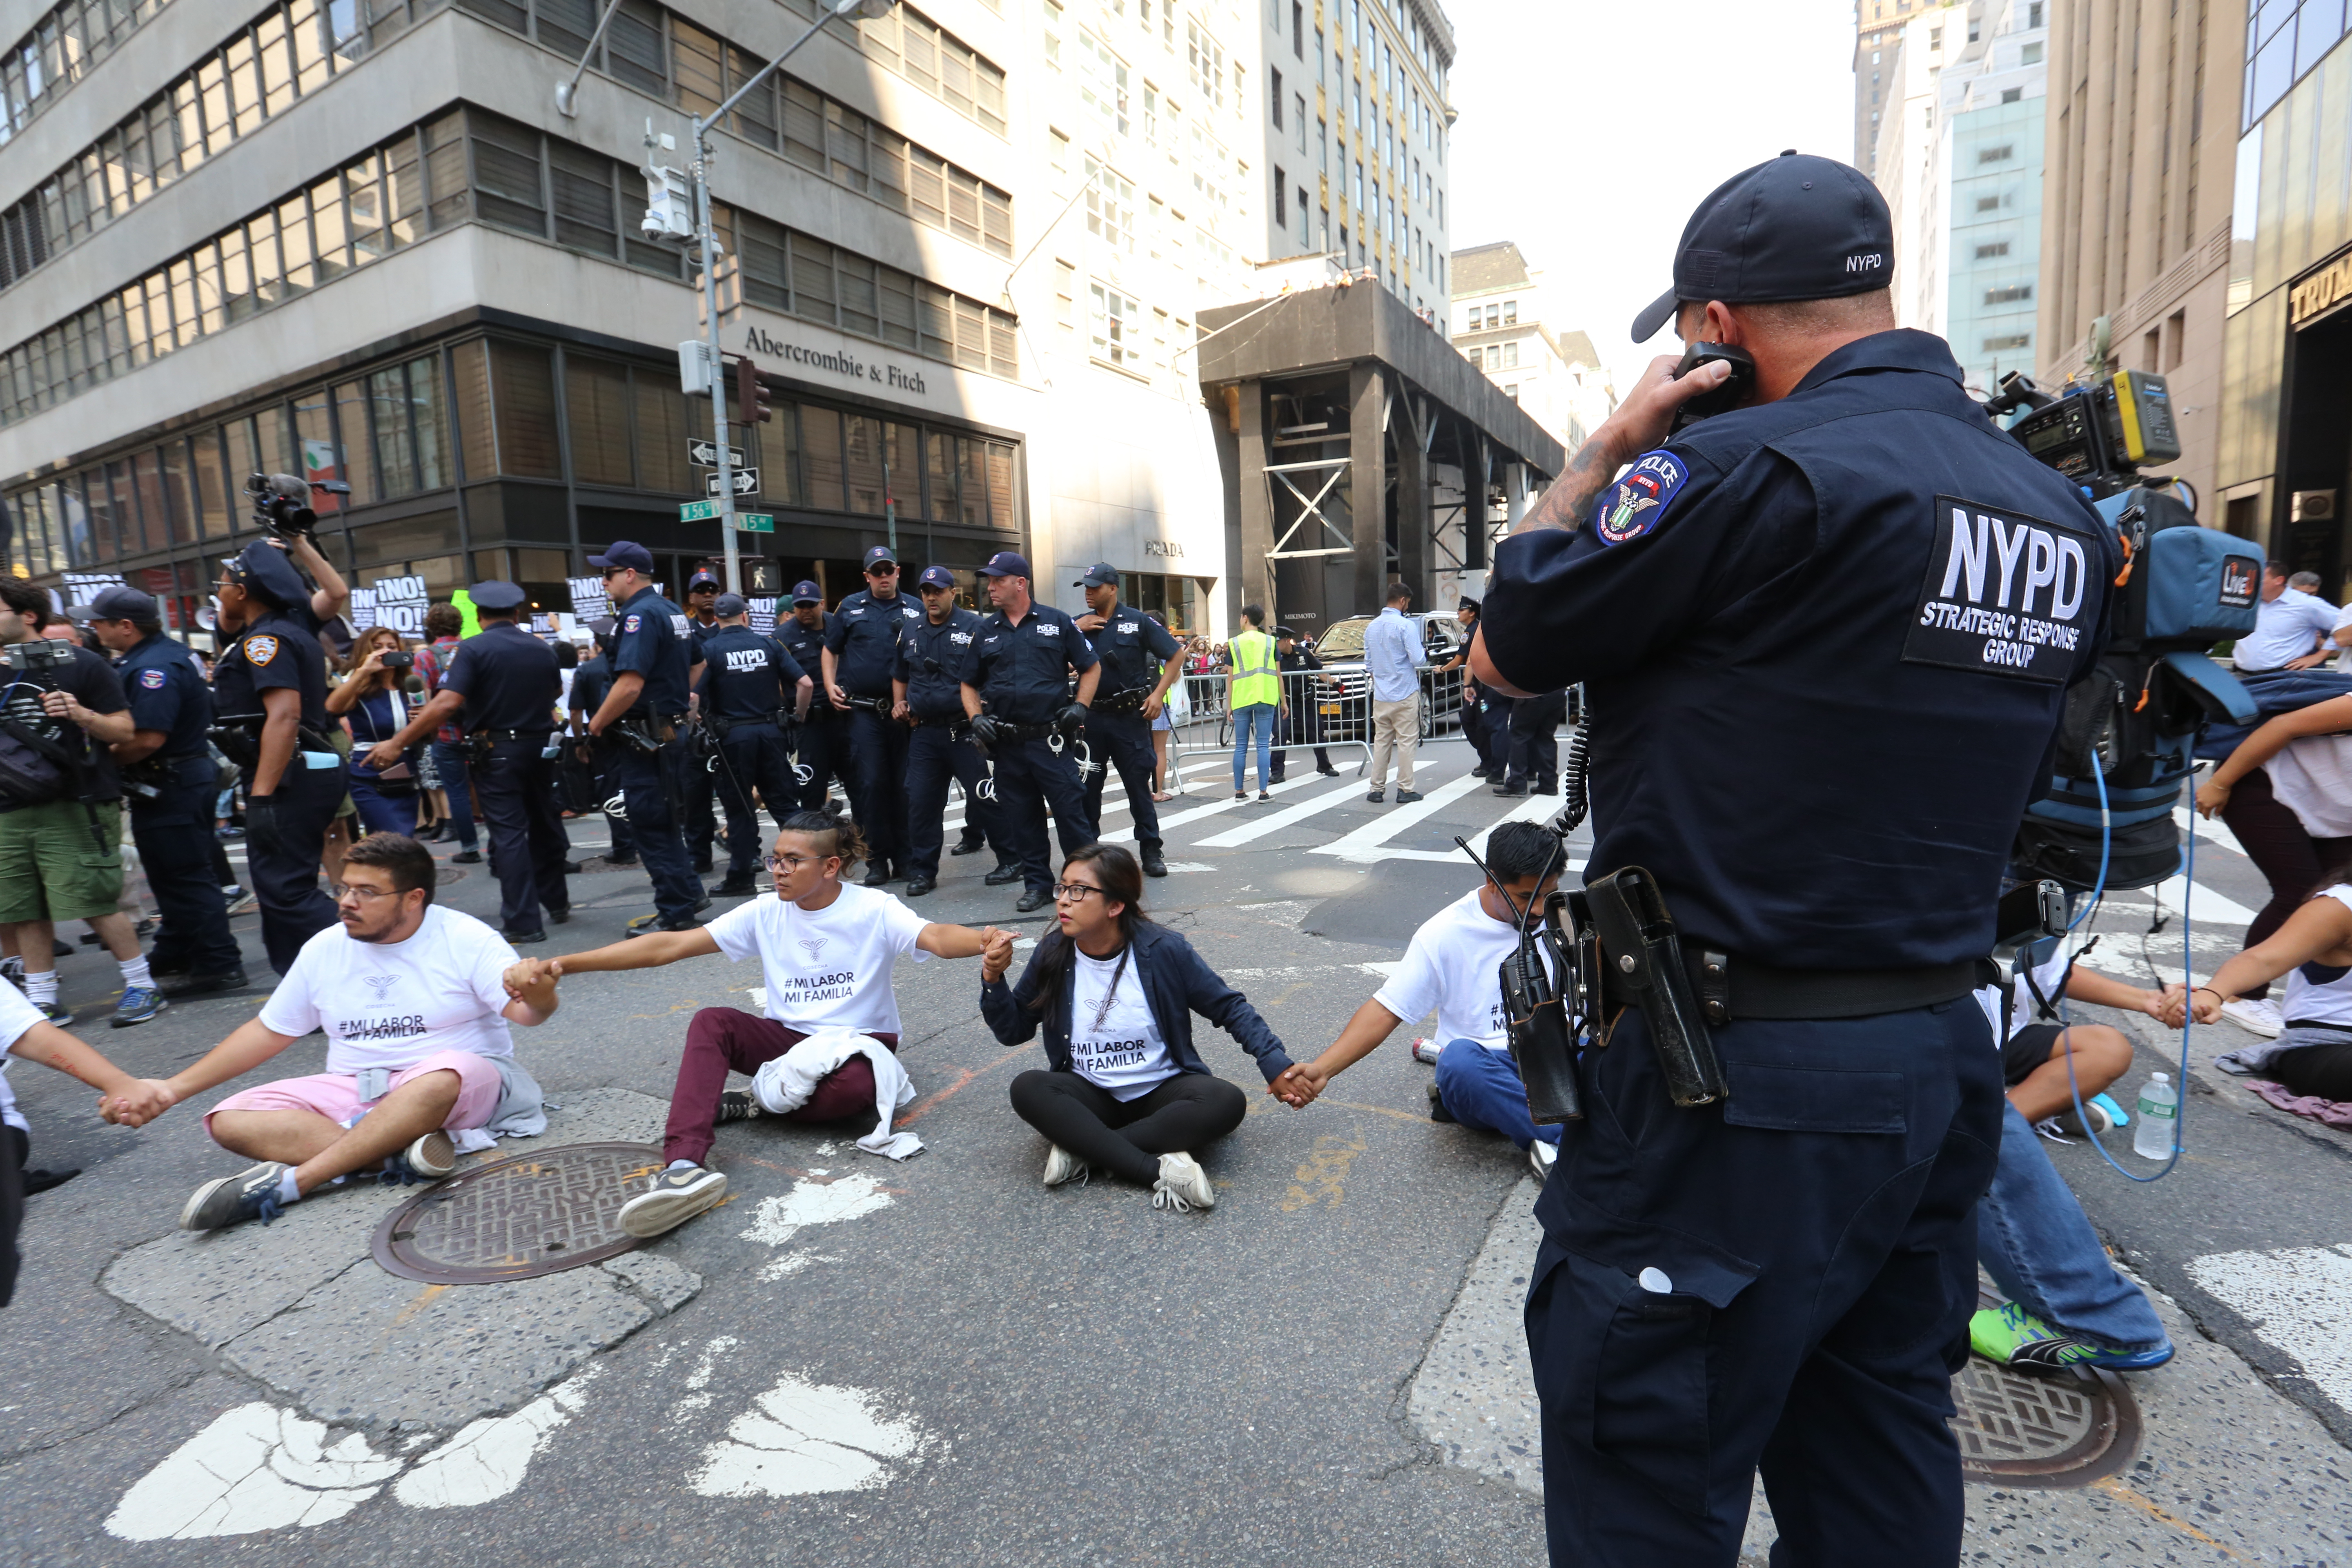 Protesta por DACA al frente de la residencia de Trump tuvo una decena de arrestos.